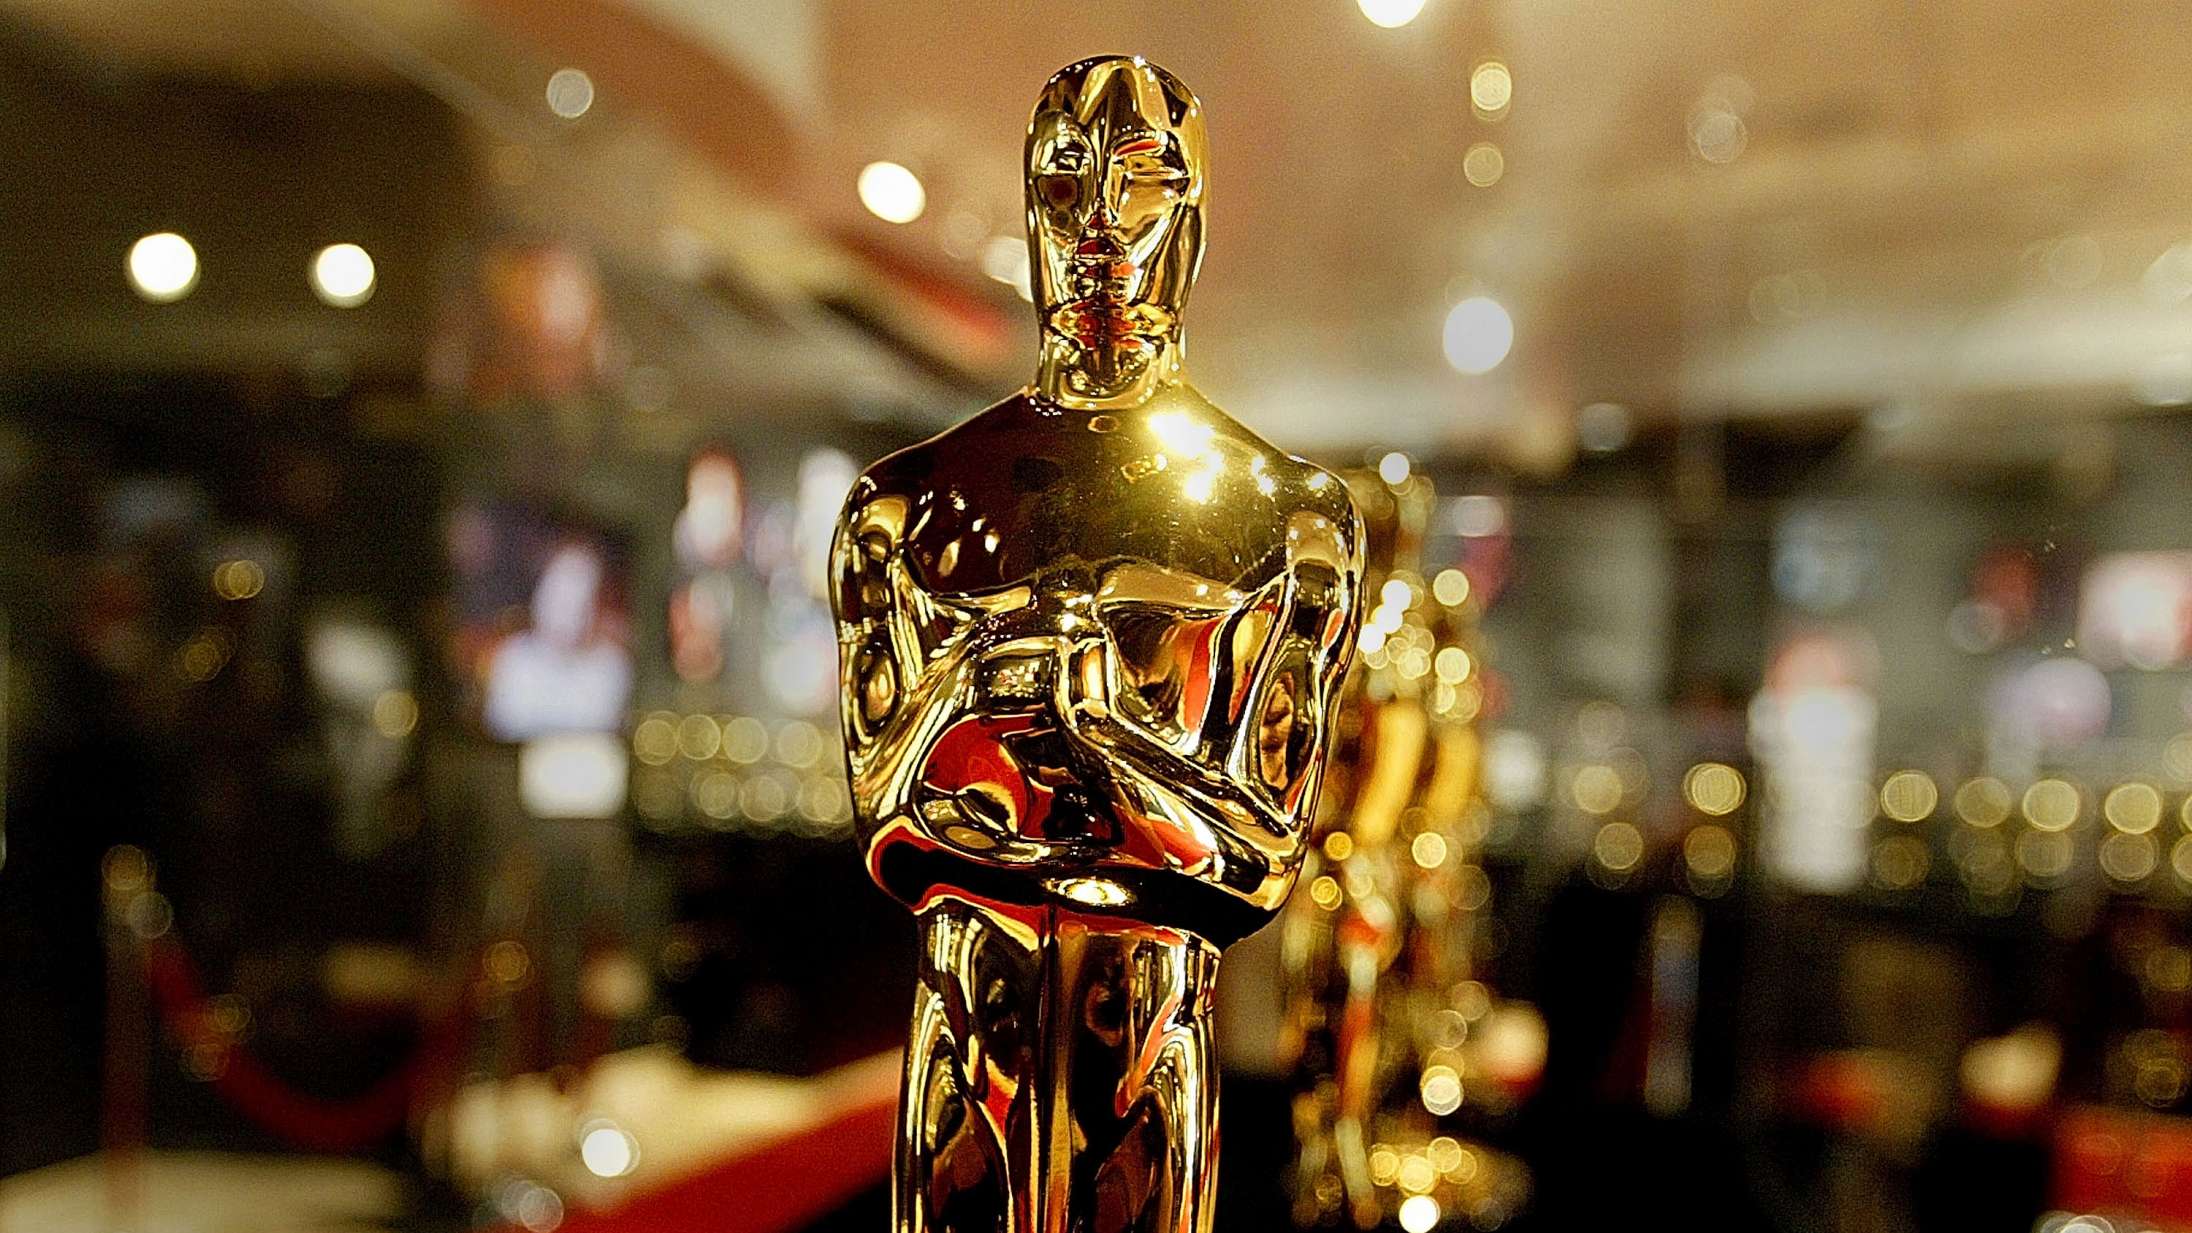 Hele fire danske film har nu officielt Oscar-chancer